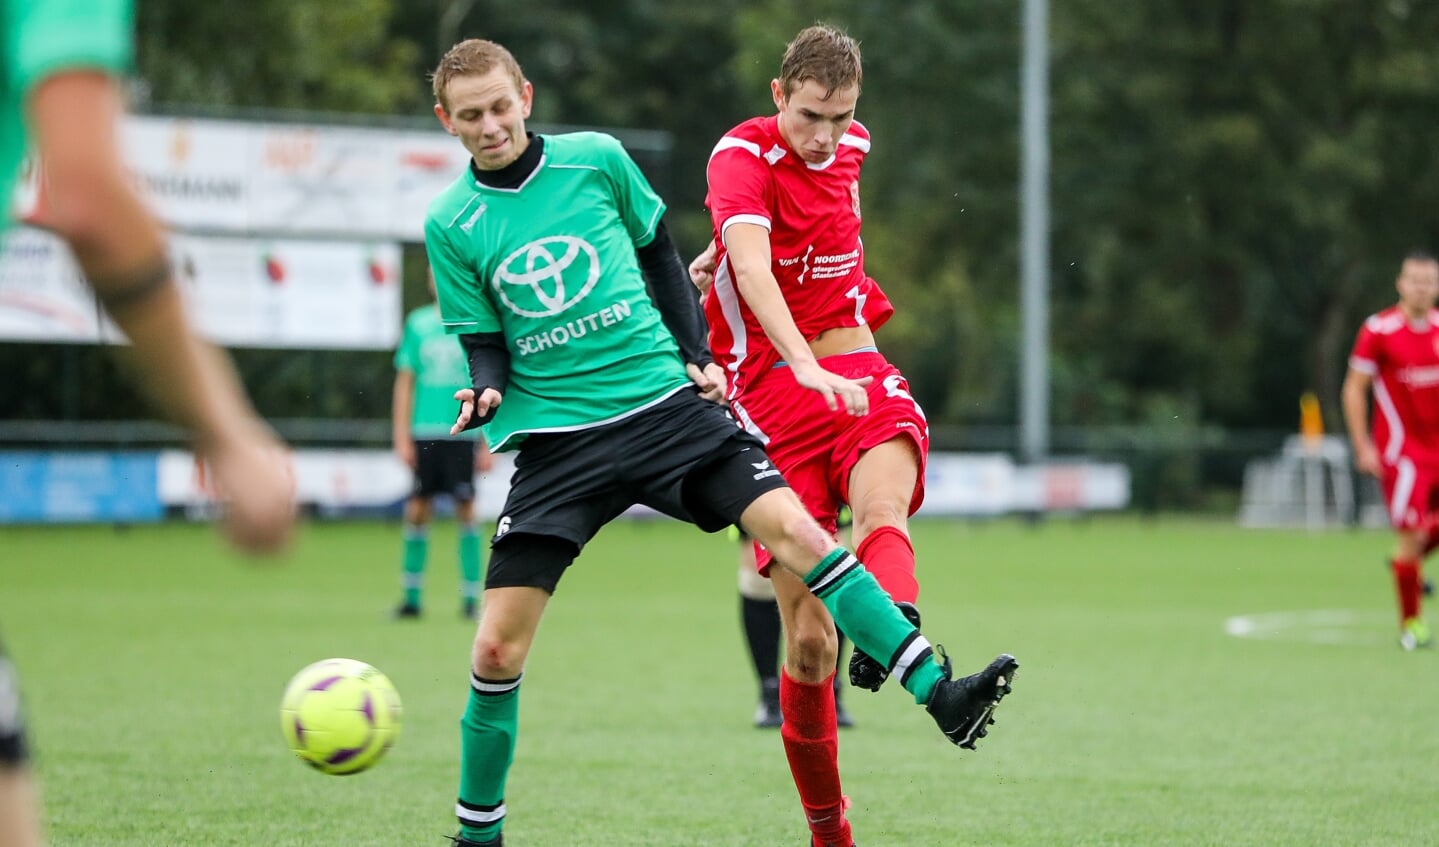 • Peursum - SV Noordeloos (1-1).